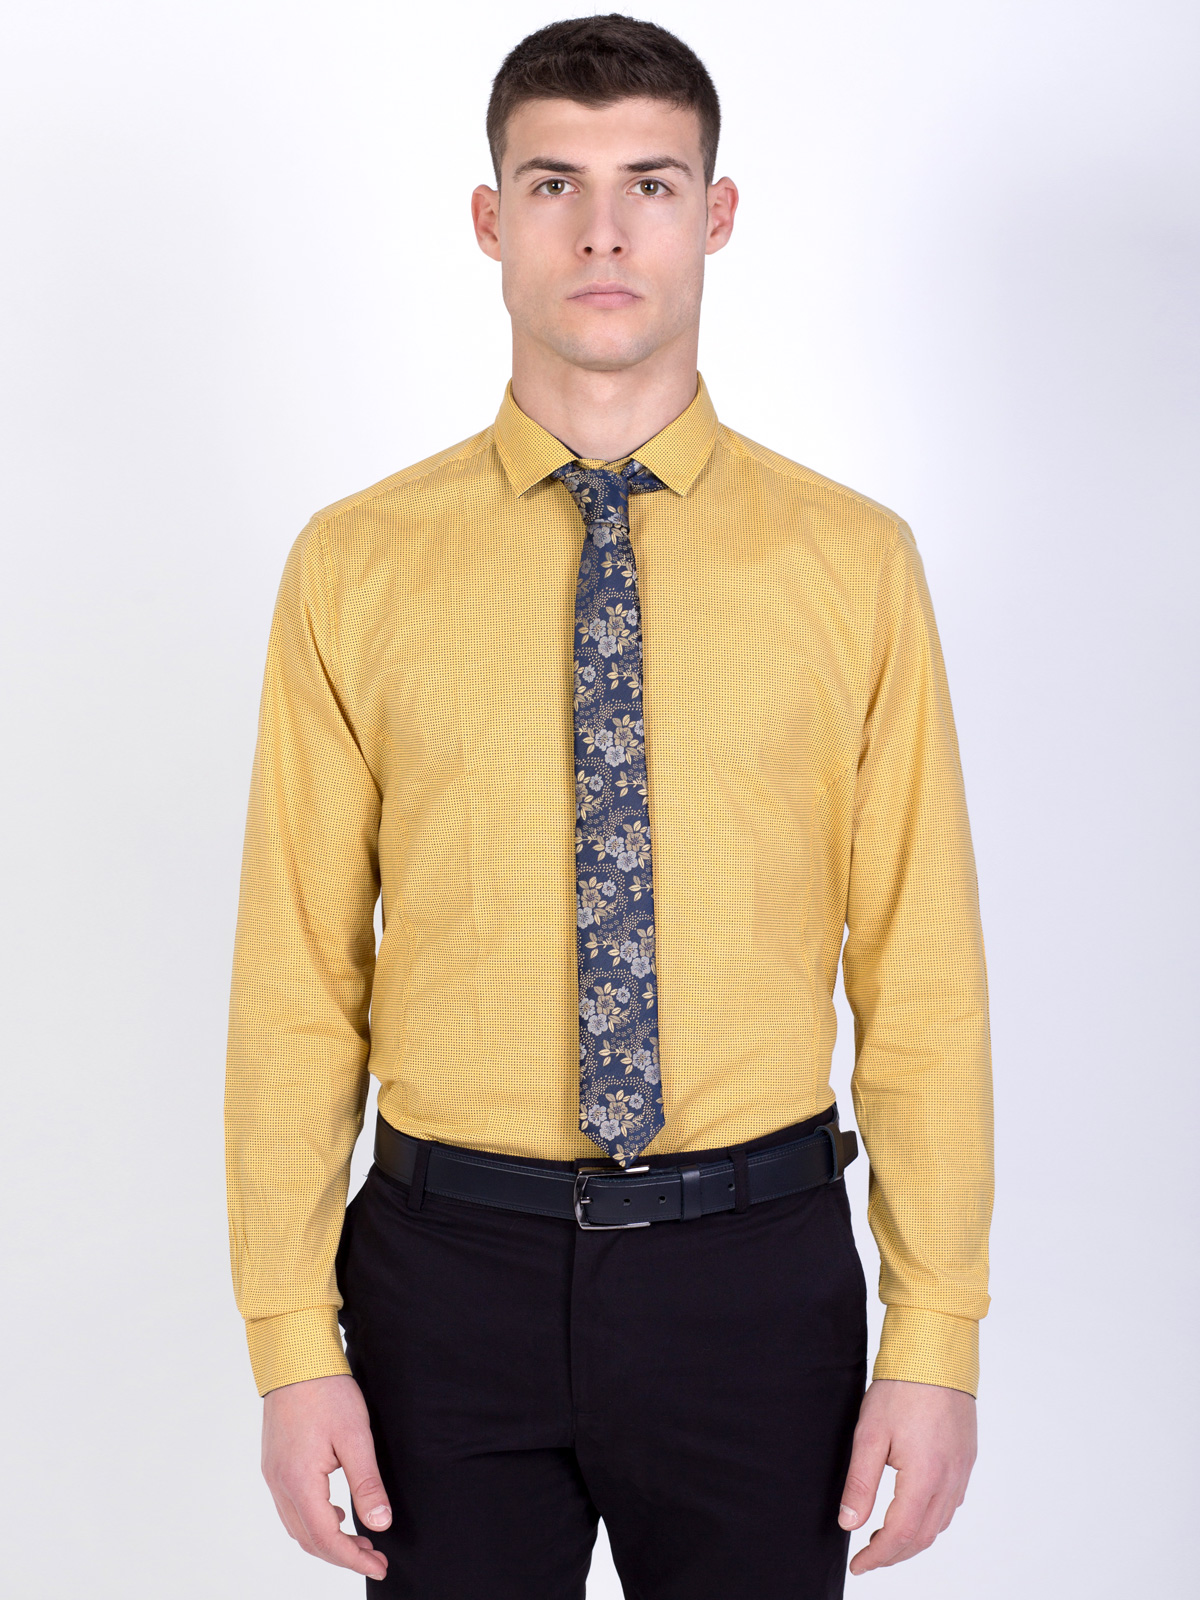 Σκούρο κίτρινο πουκάμισο με μικρές φιγο - 21454 € 21.93 img2